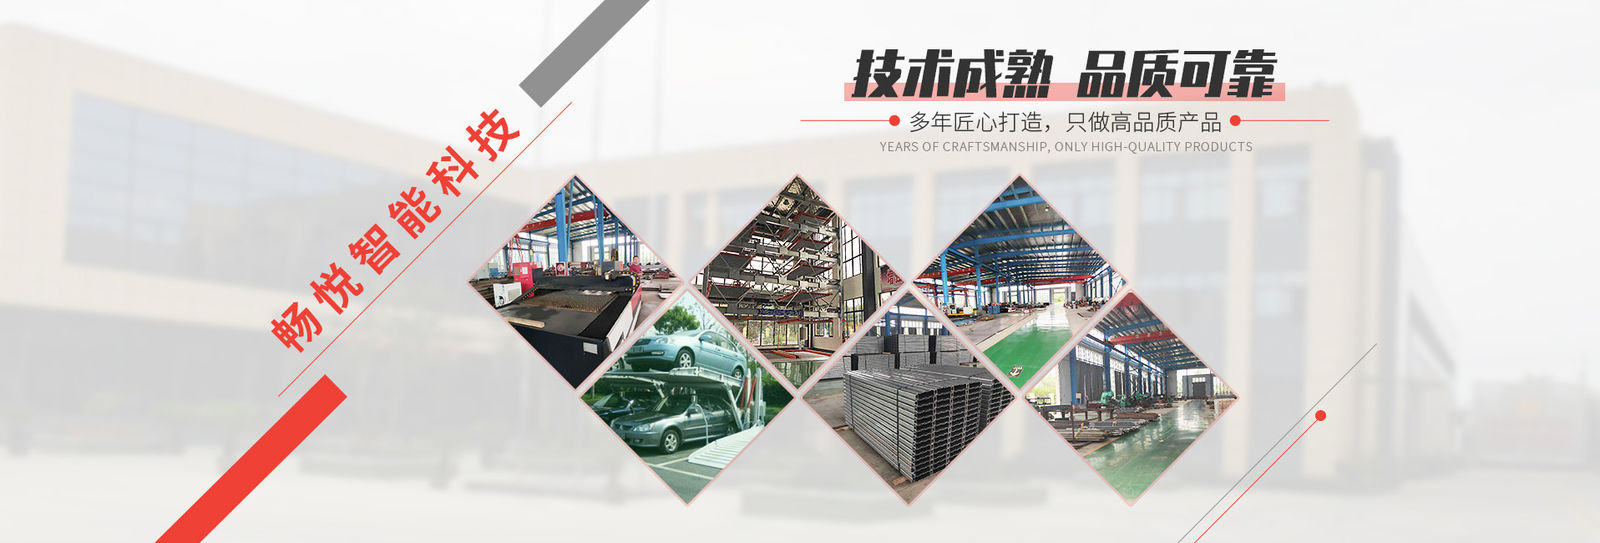 Trung Quốc Shanghai Changyue Automation Machinery Co., Ltd. hồ sơ công ty